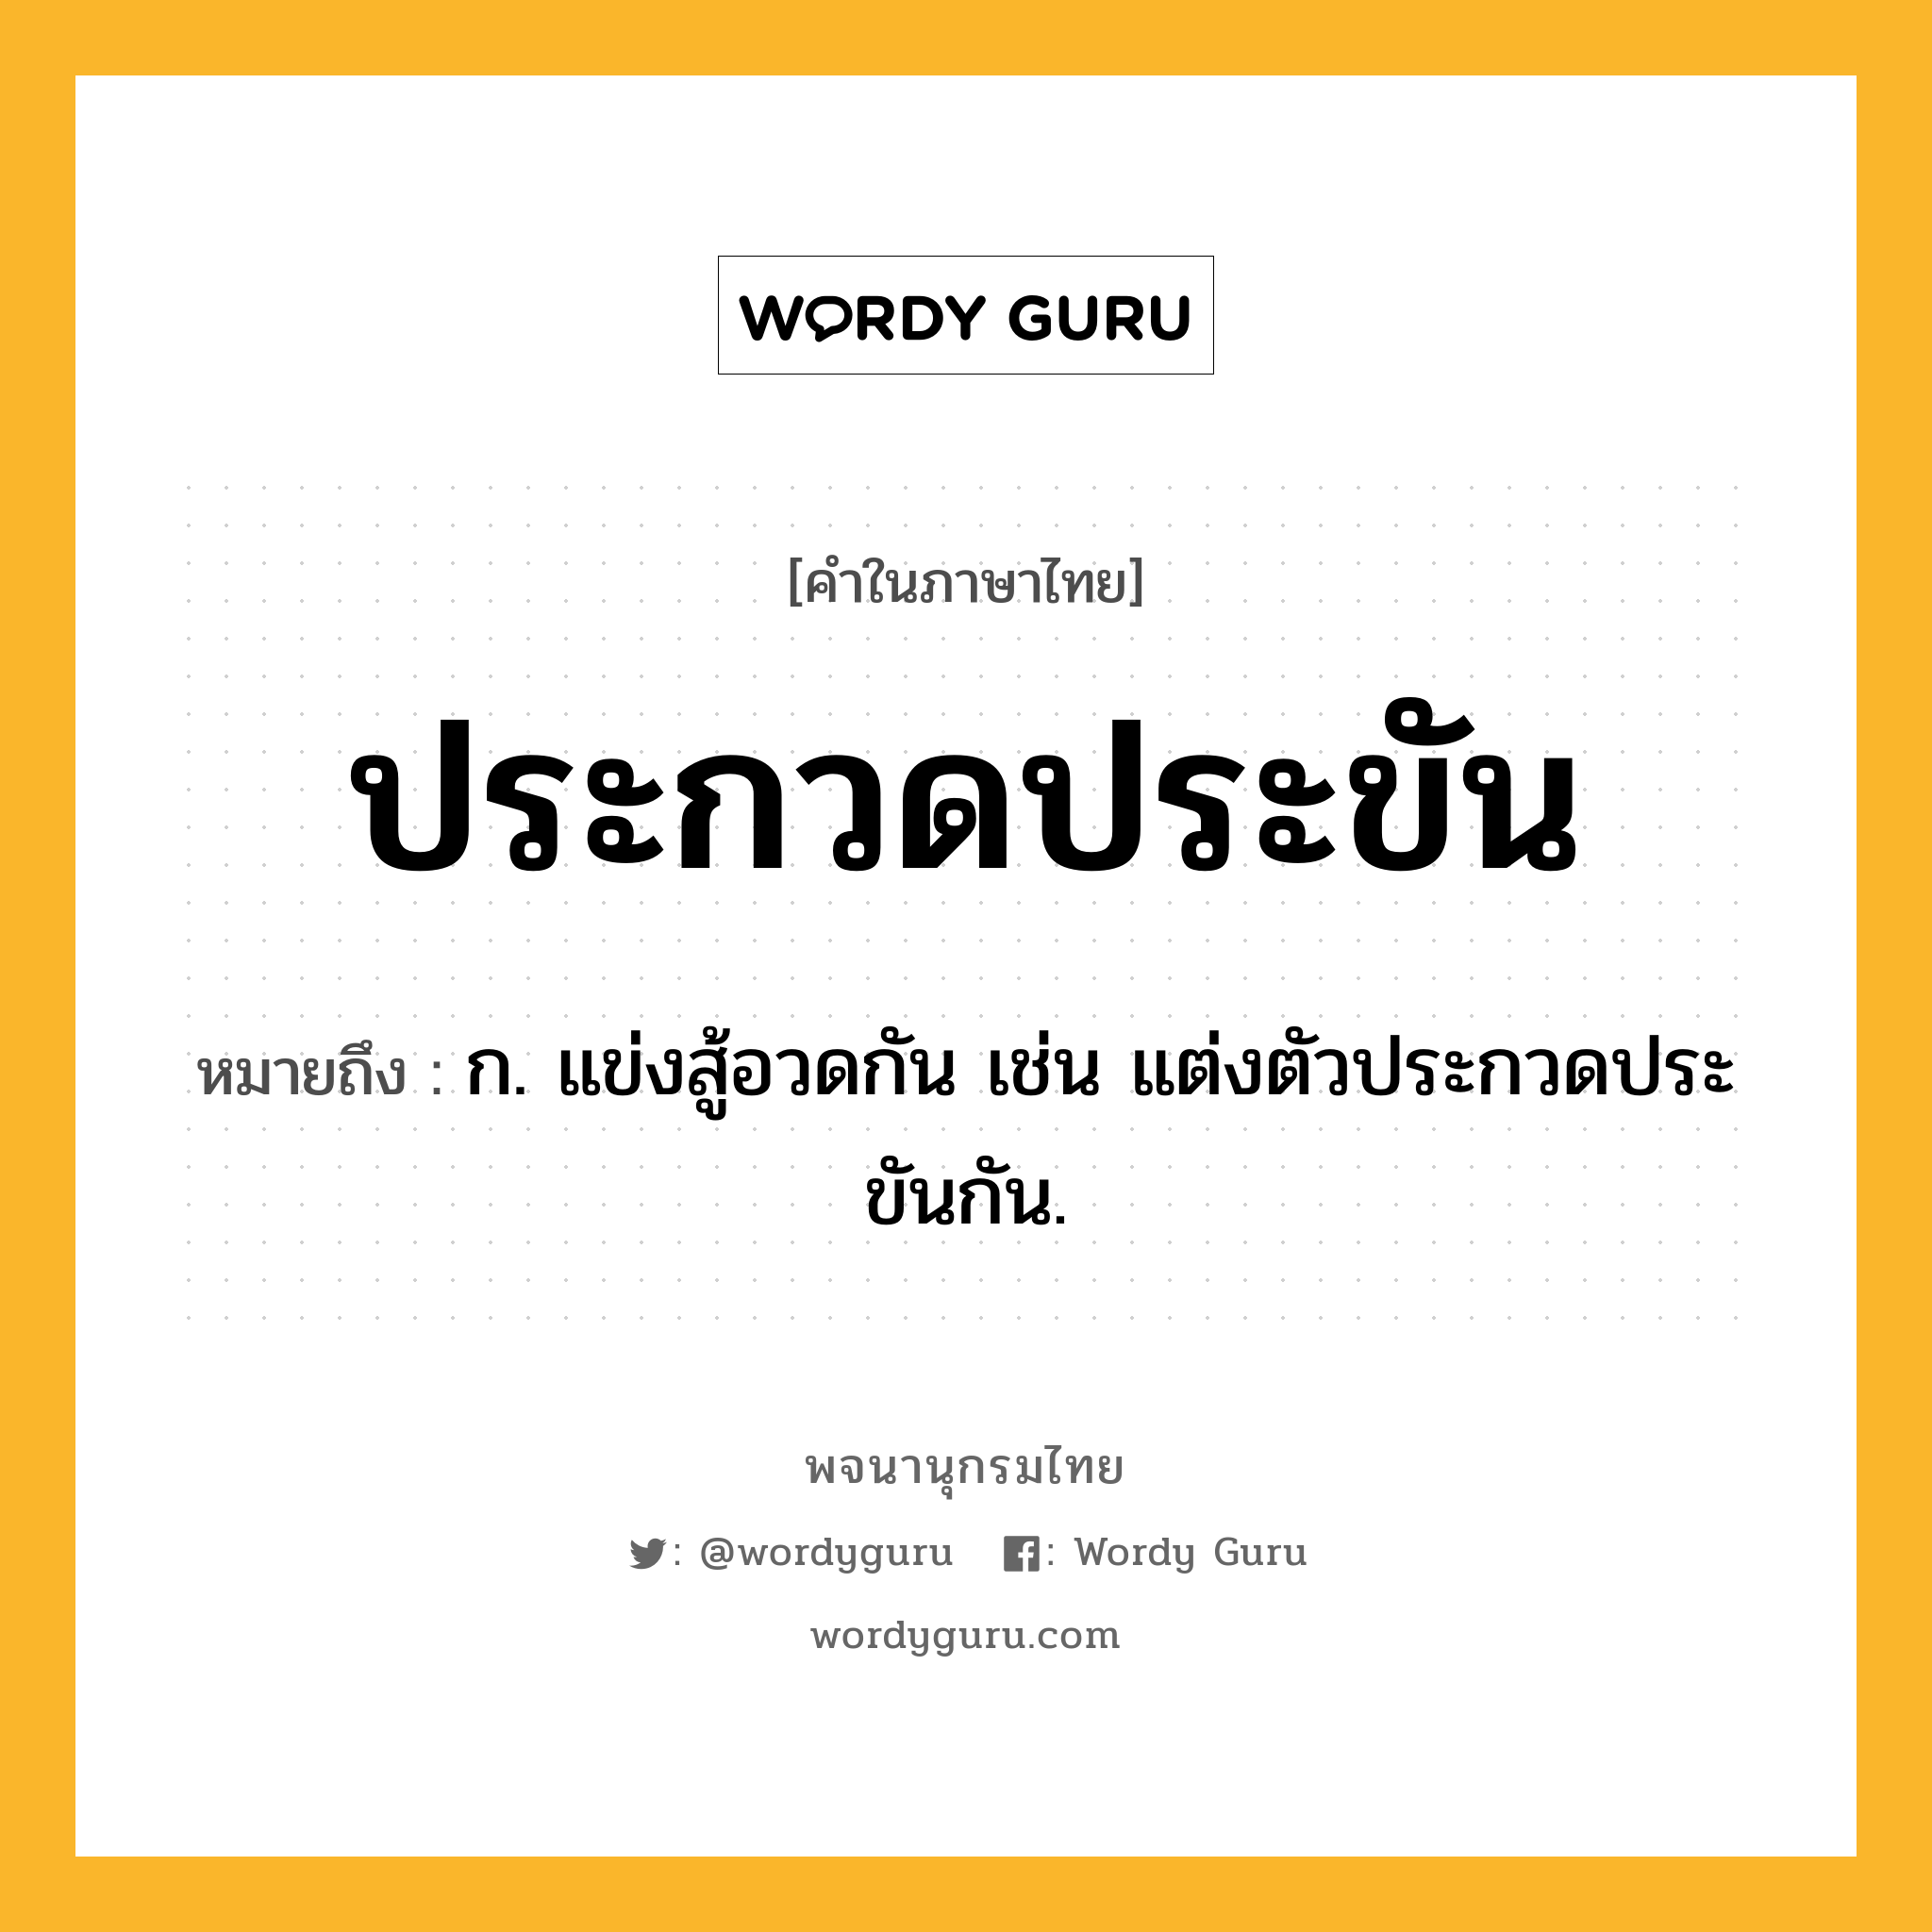 ประกวดประขัน ความหมาย หมายถึงอะไร?, คำในภาษาไทย ประกวดประขัน หมายถึง ก. แข่งสู้อวดกัน เช่น แต่งตัวประกวดประขันกัน.